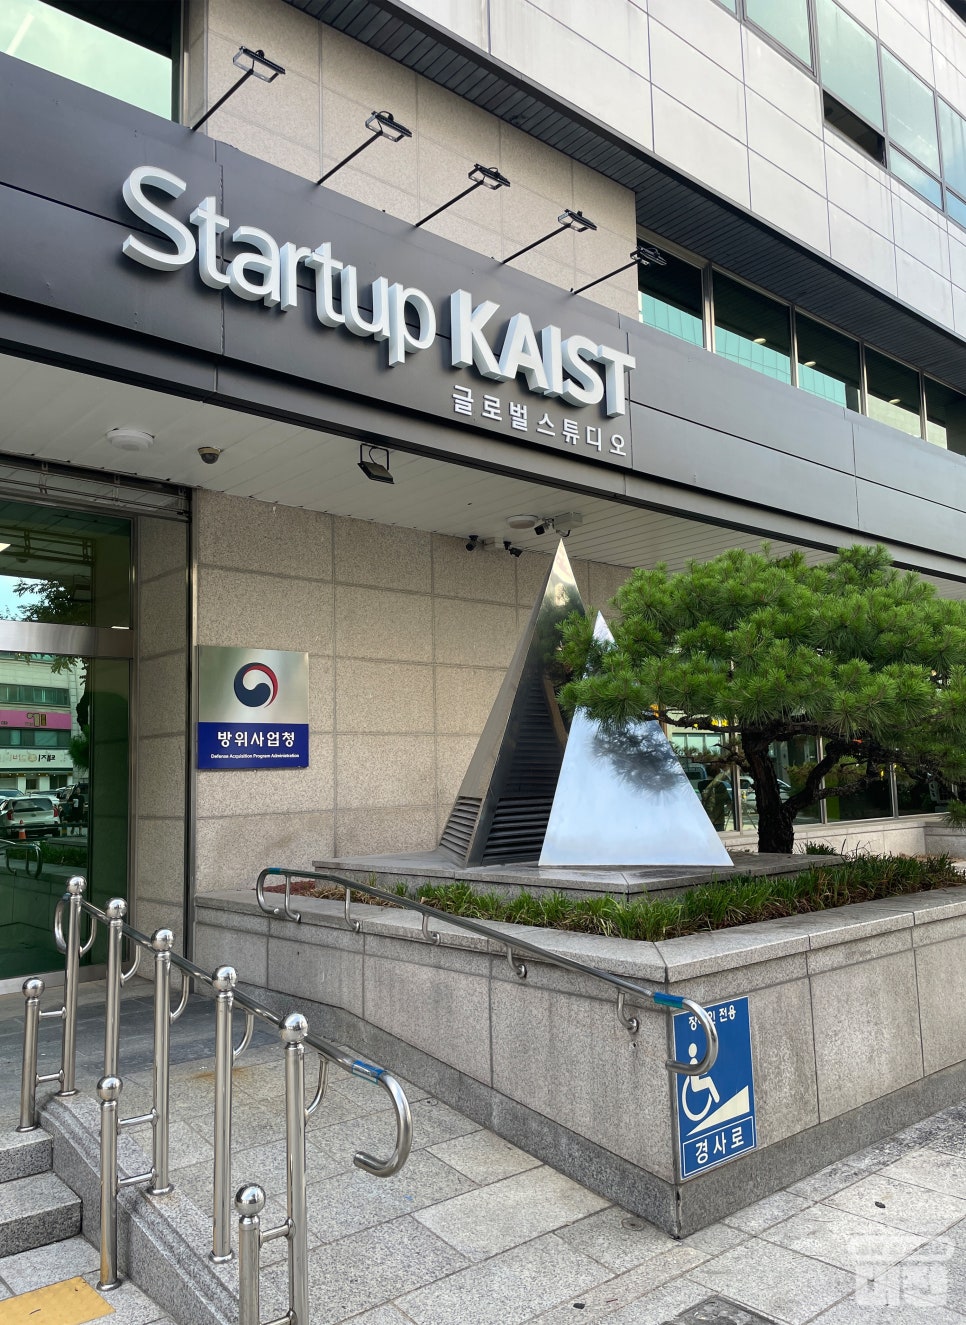 대전시 ‘Startup KAIST 글로벌 스튜디오’ 창업 공간 개소